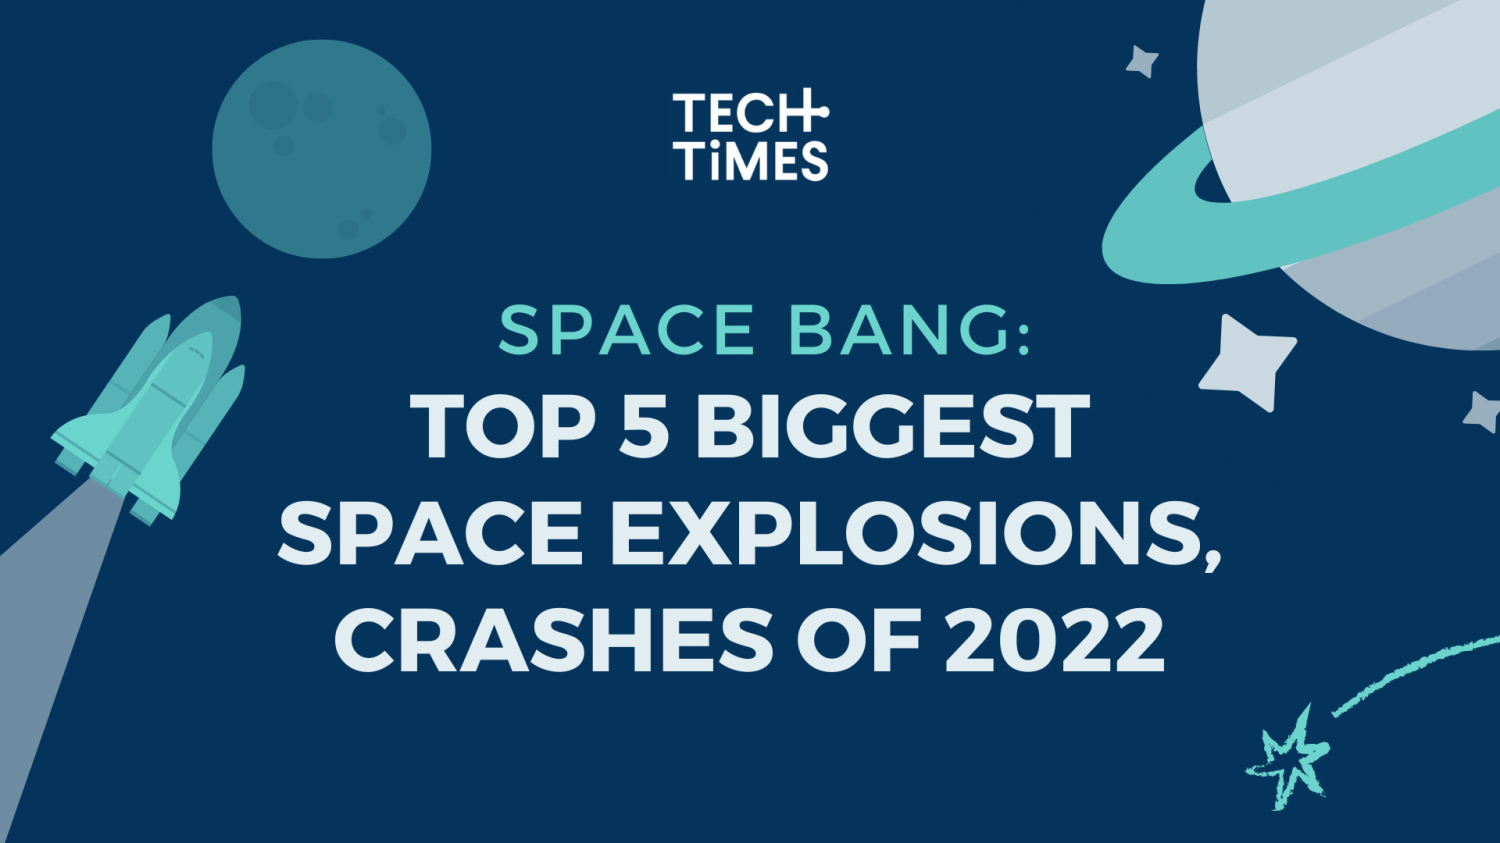 太空爆炸:2022年最大的5大太空爆炸和坠毁